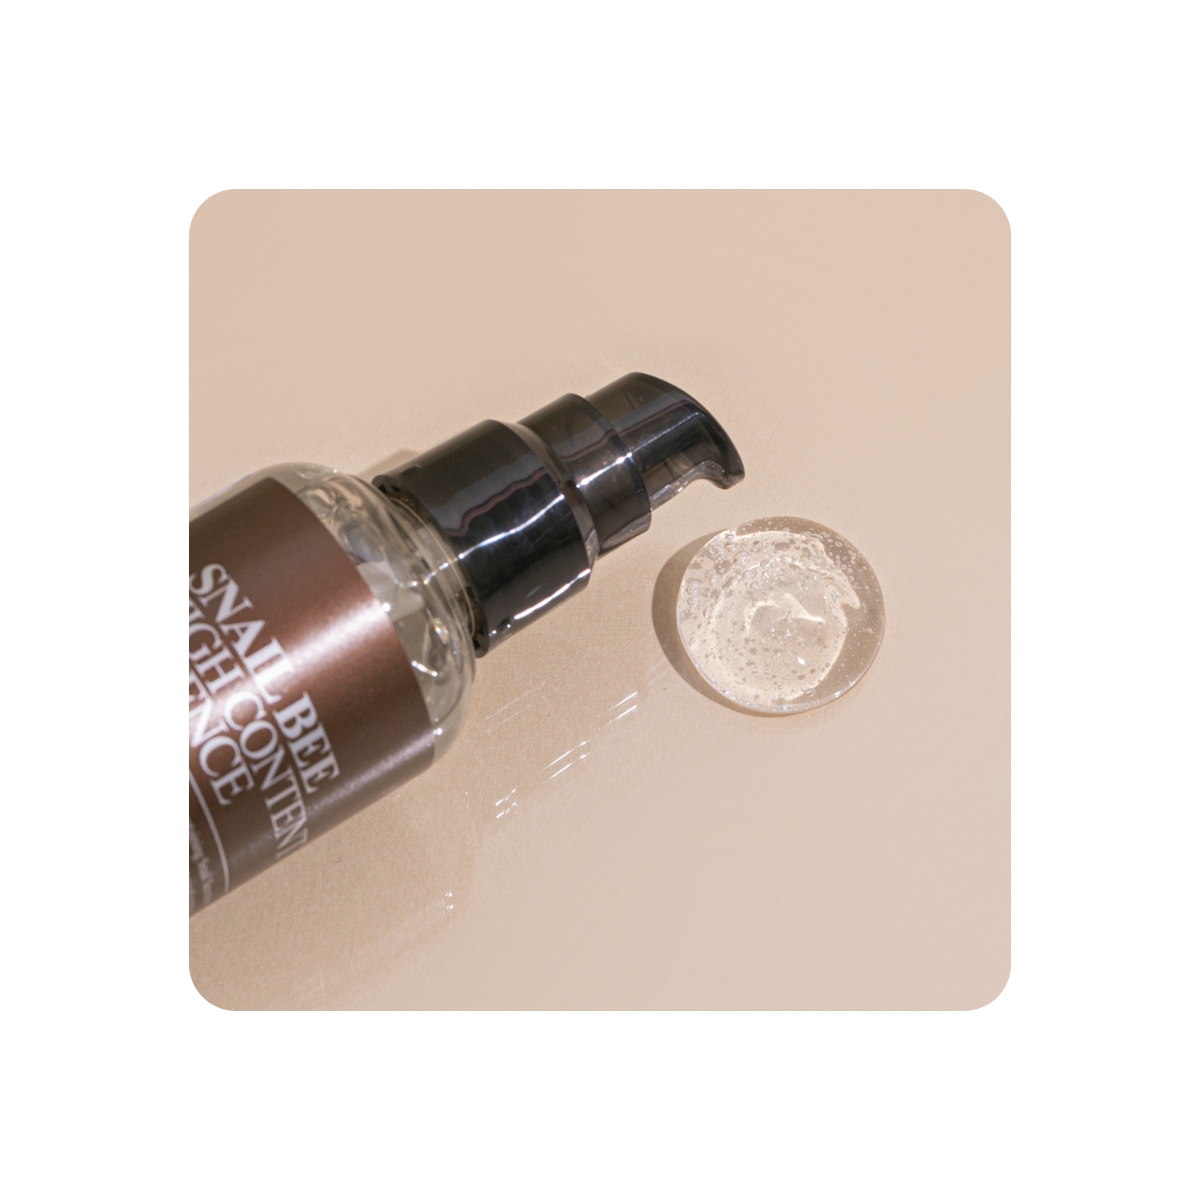 Cosmética Coreana al mejor precio: Esencia Anti-arrugas y Anti-manchas - Benton Snail Bee High Content Essence de Benton en Skin Thinks - Piel Seca